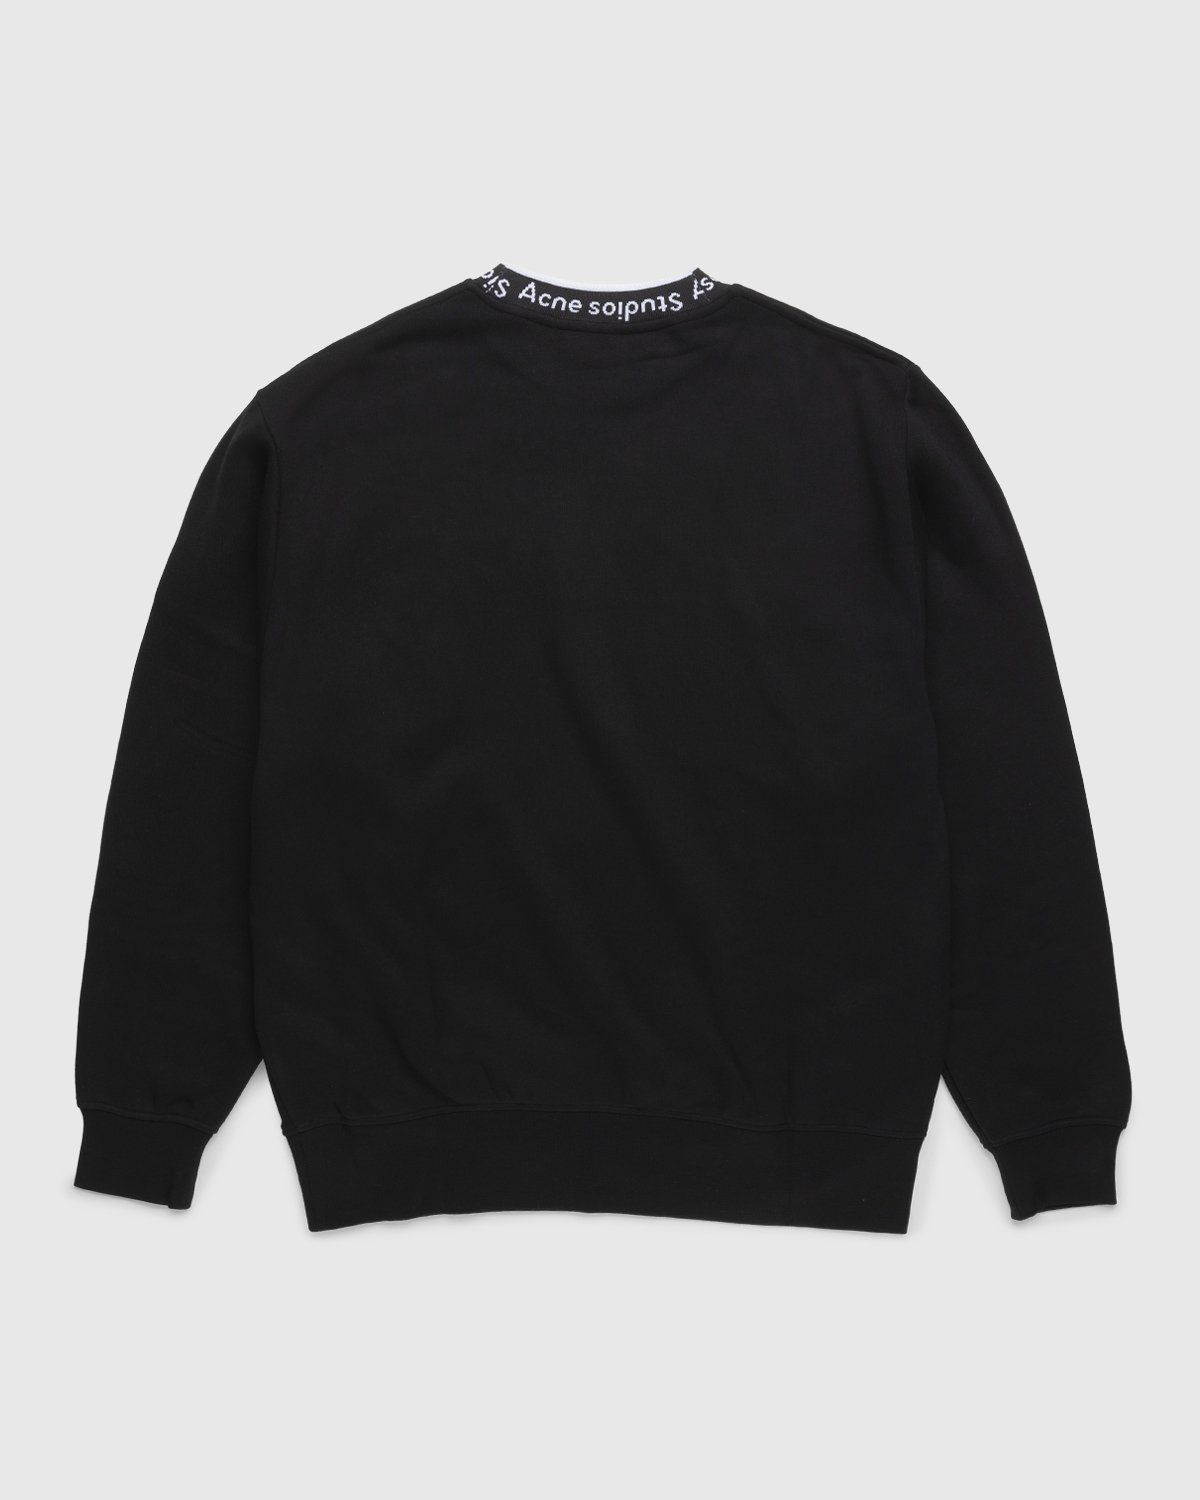 Acne Studios - Logo Rib Sweatshirt Black - Clothing - Black - Image 2